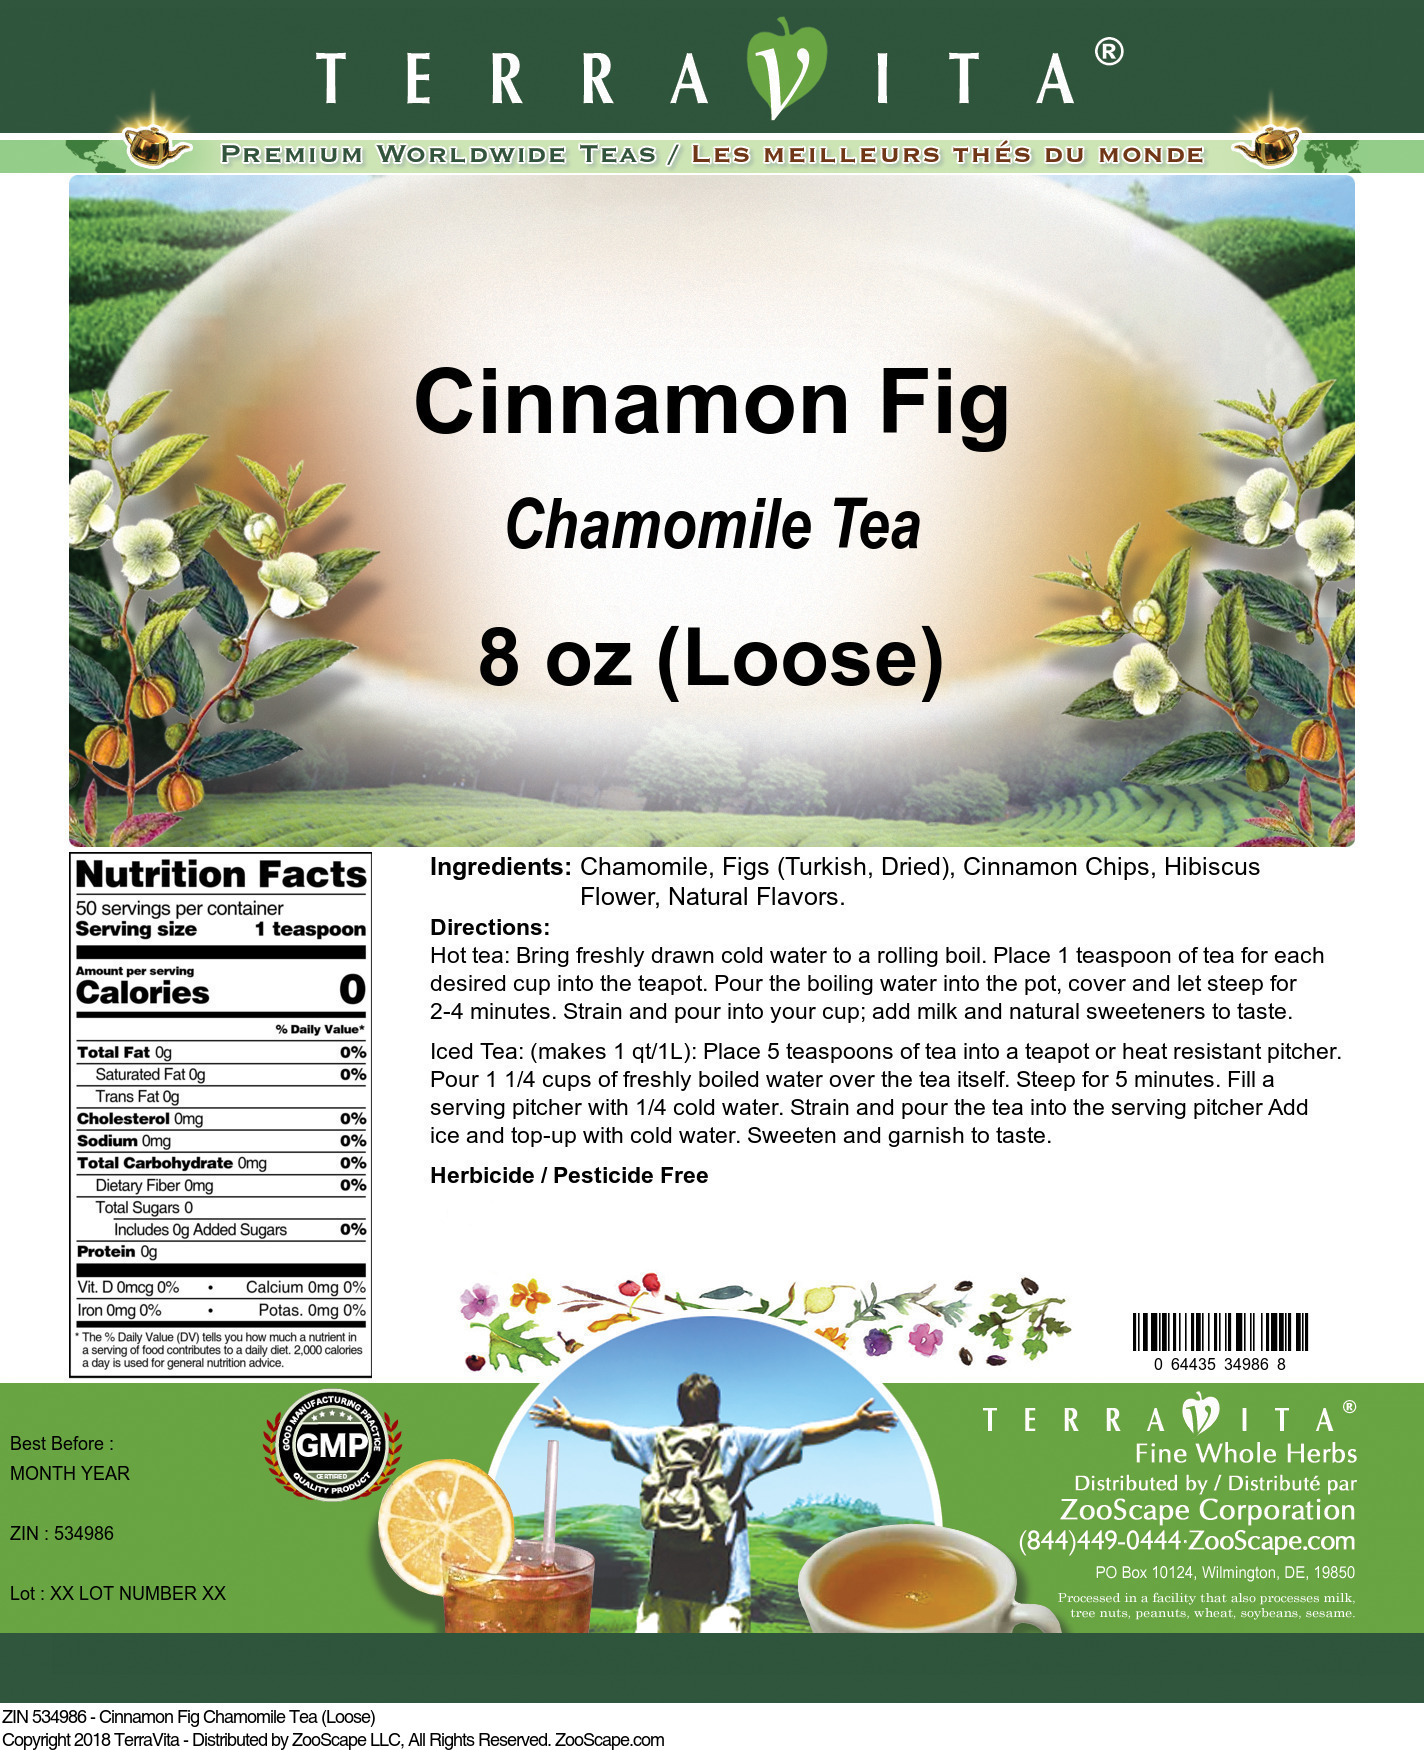 Cinnamon Fig Chamomile Tea (Loose) - Label